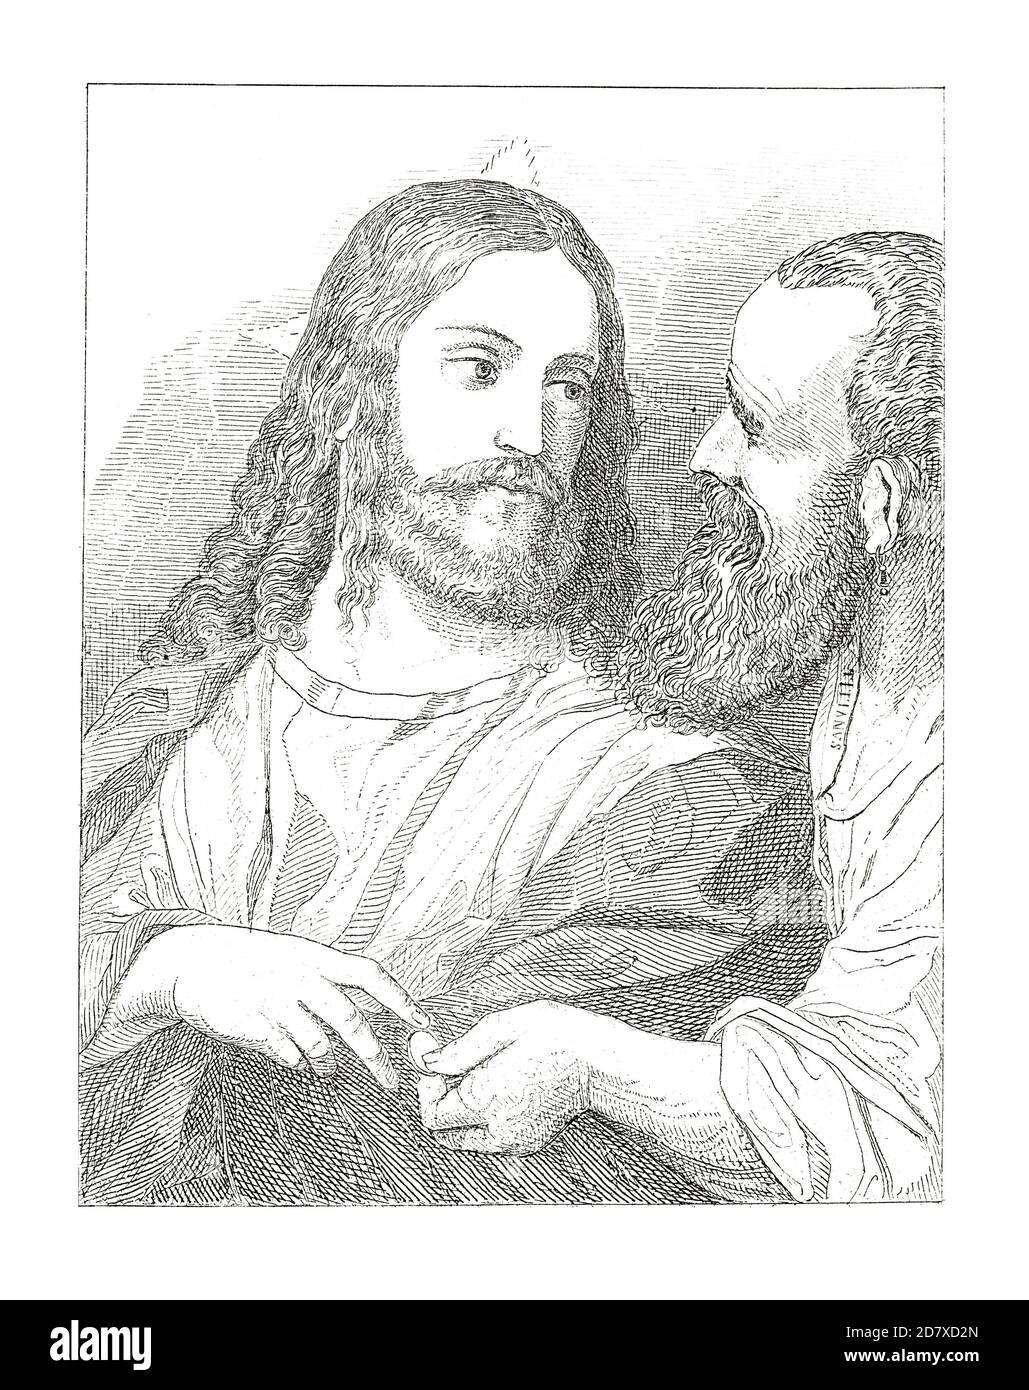 Stich aus dem 19. Jahrhundert, der Christus und das Tribute-Geld darstellt, Gemälde von Tizian. Illustration veröffentlicht in Systematischer Bilder Atlas - Bauwesen, I Stockfoto